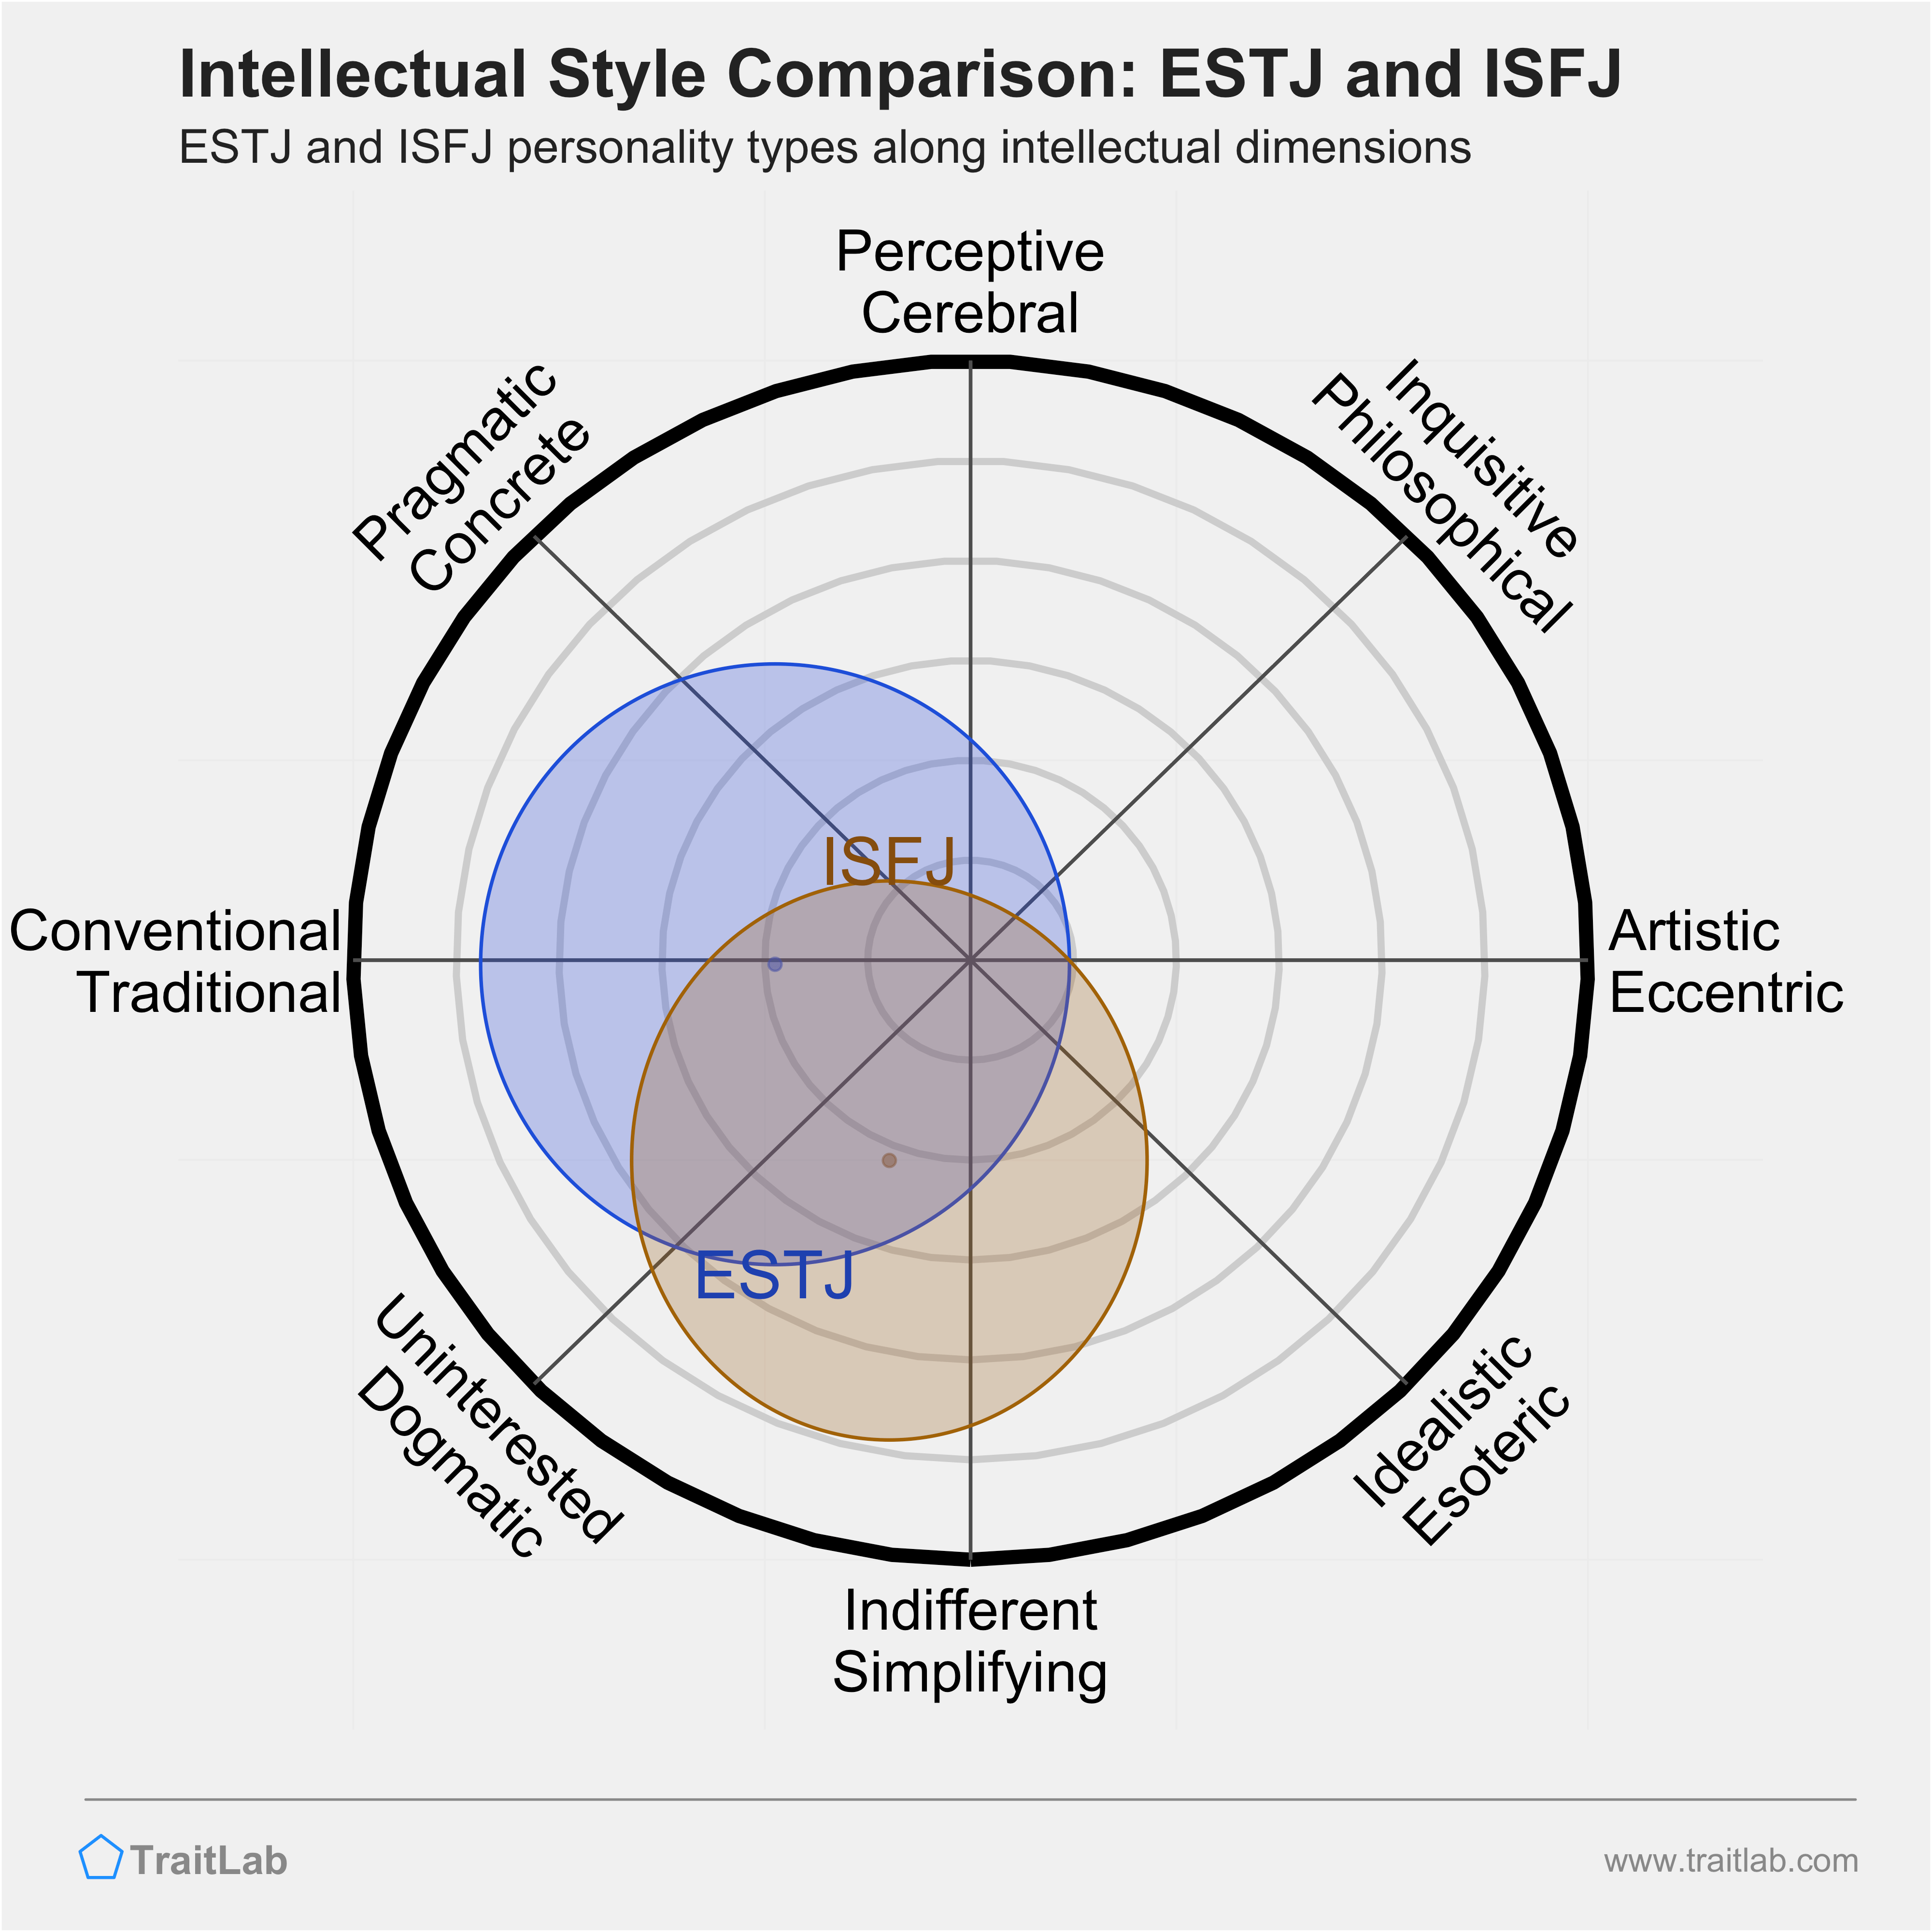 ESTJ and ISFJ comparison across intellectual dimensions